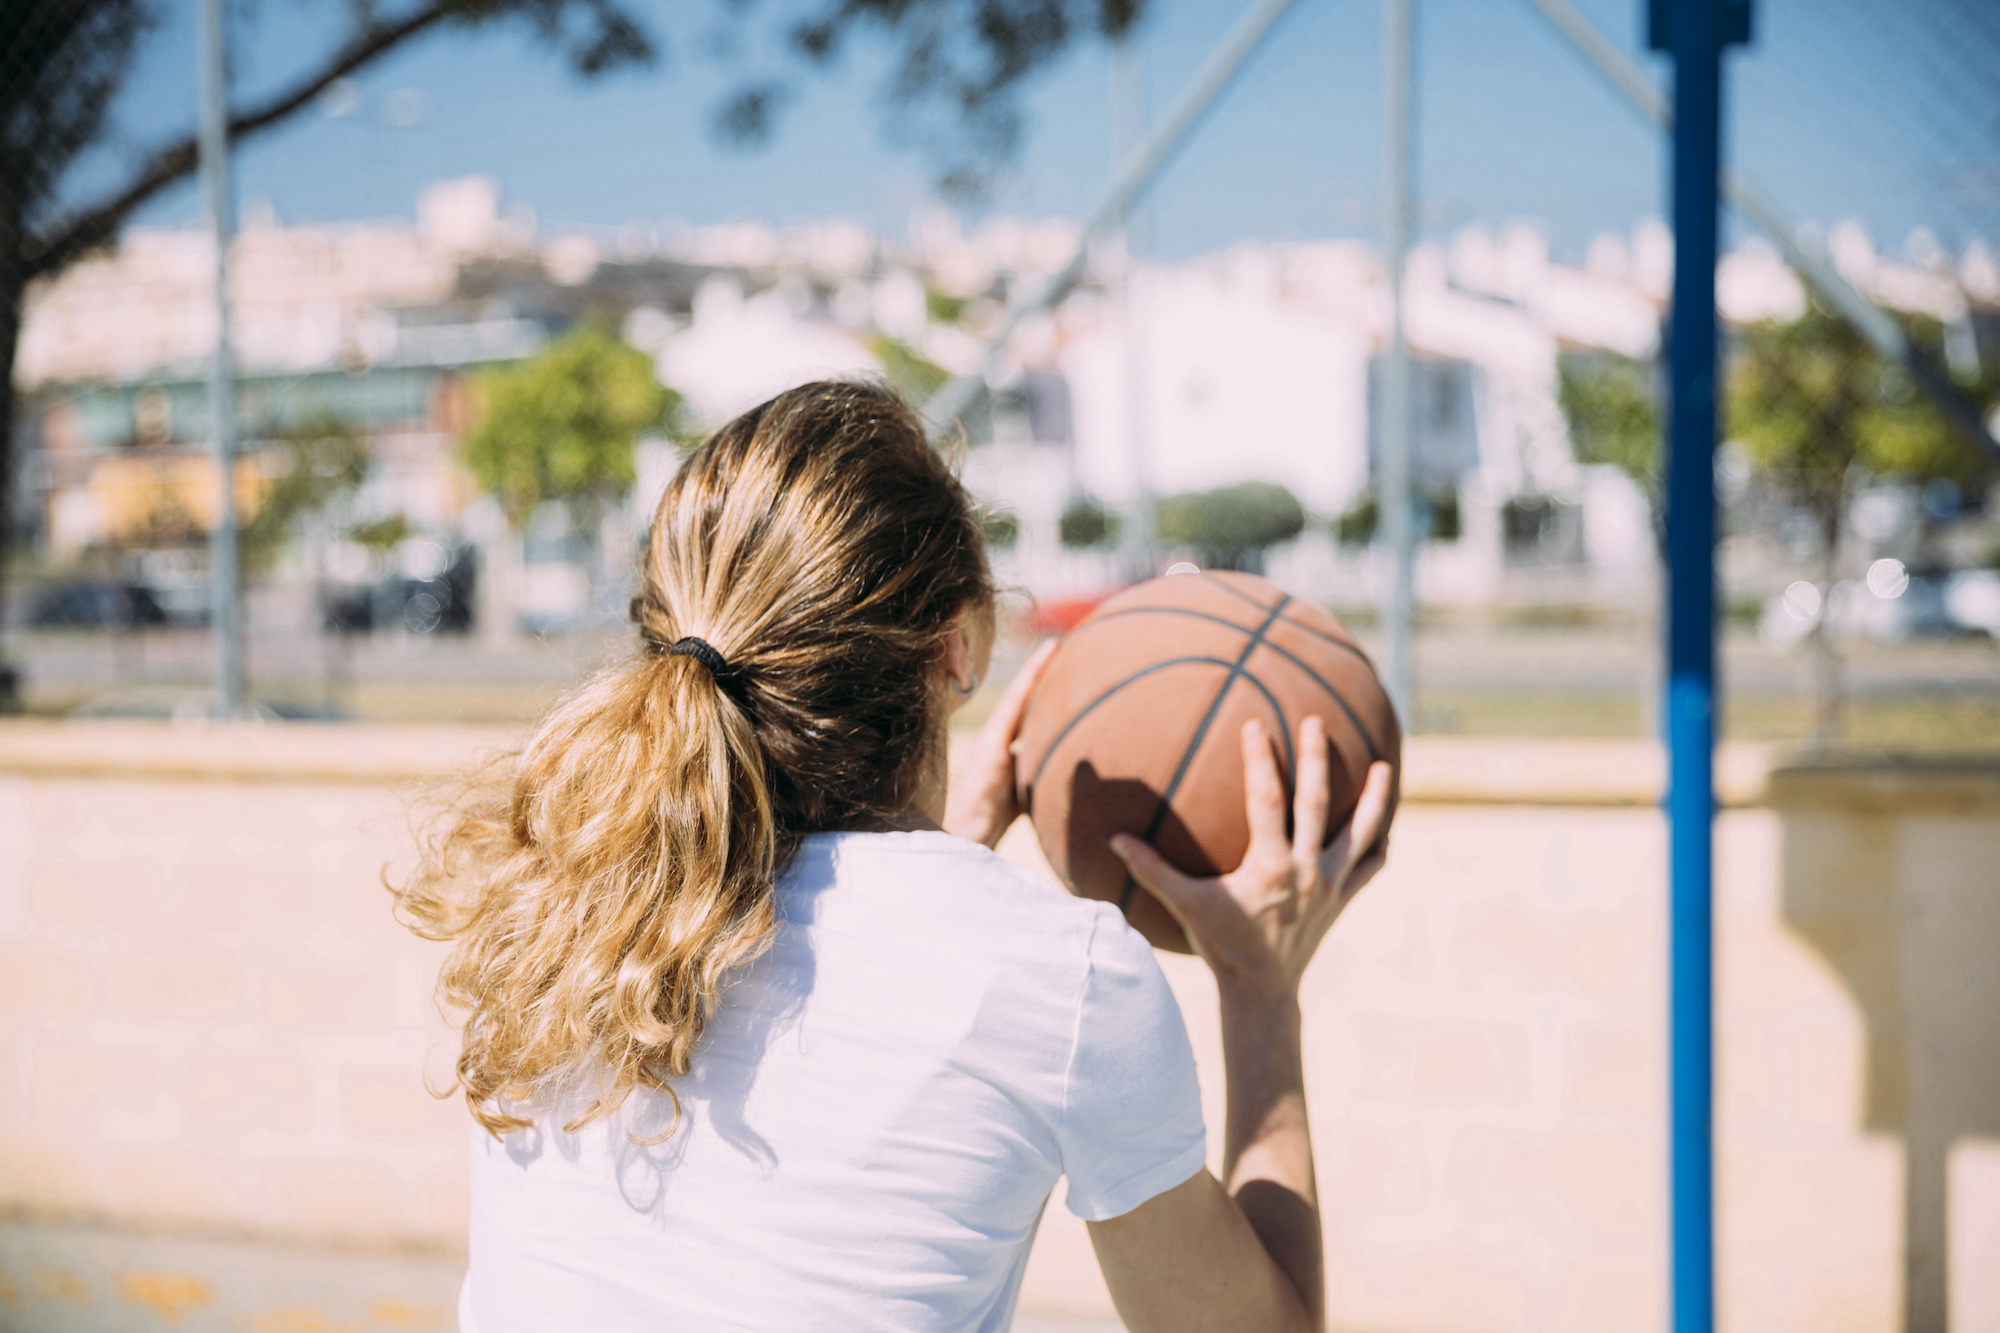 https://basketballschool.it/wp-content/uploads/2021/03/young-woman-playing-basketball.jpeg